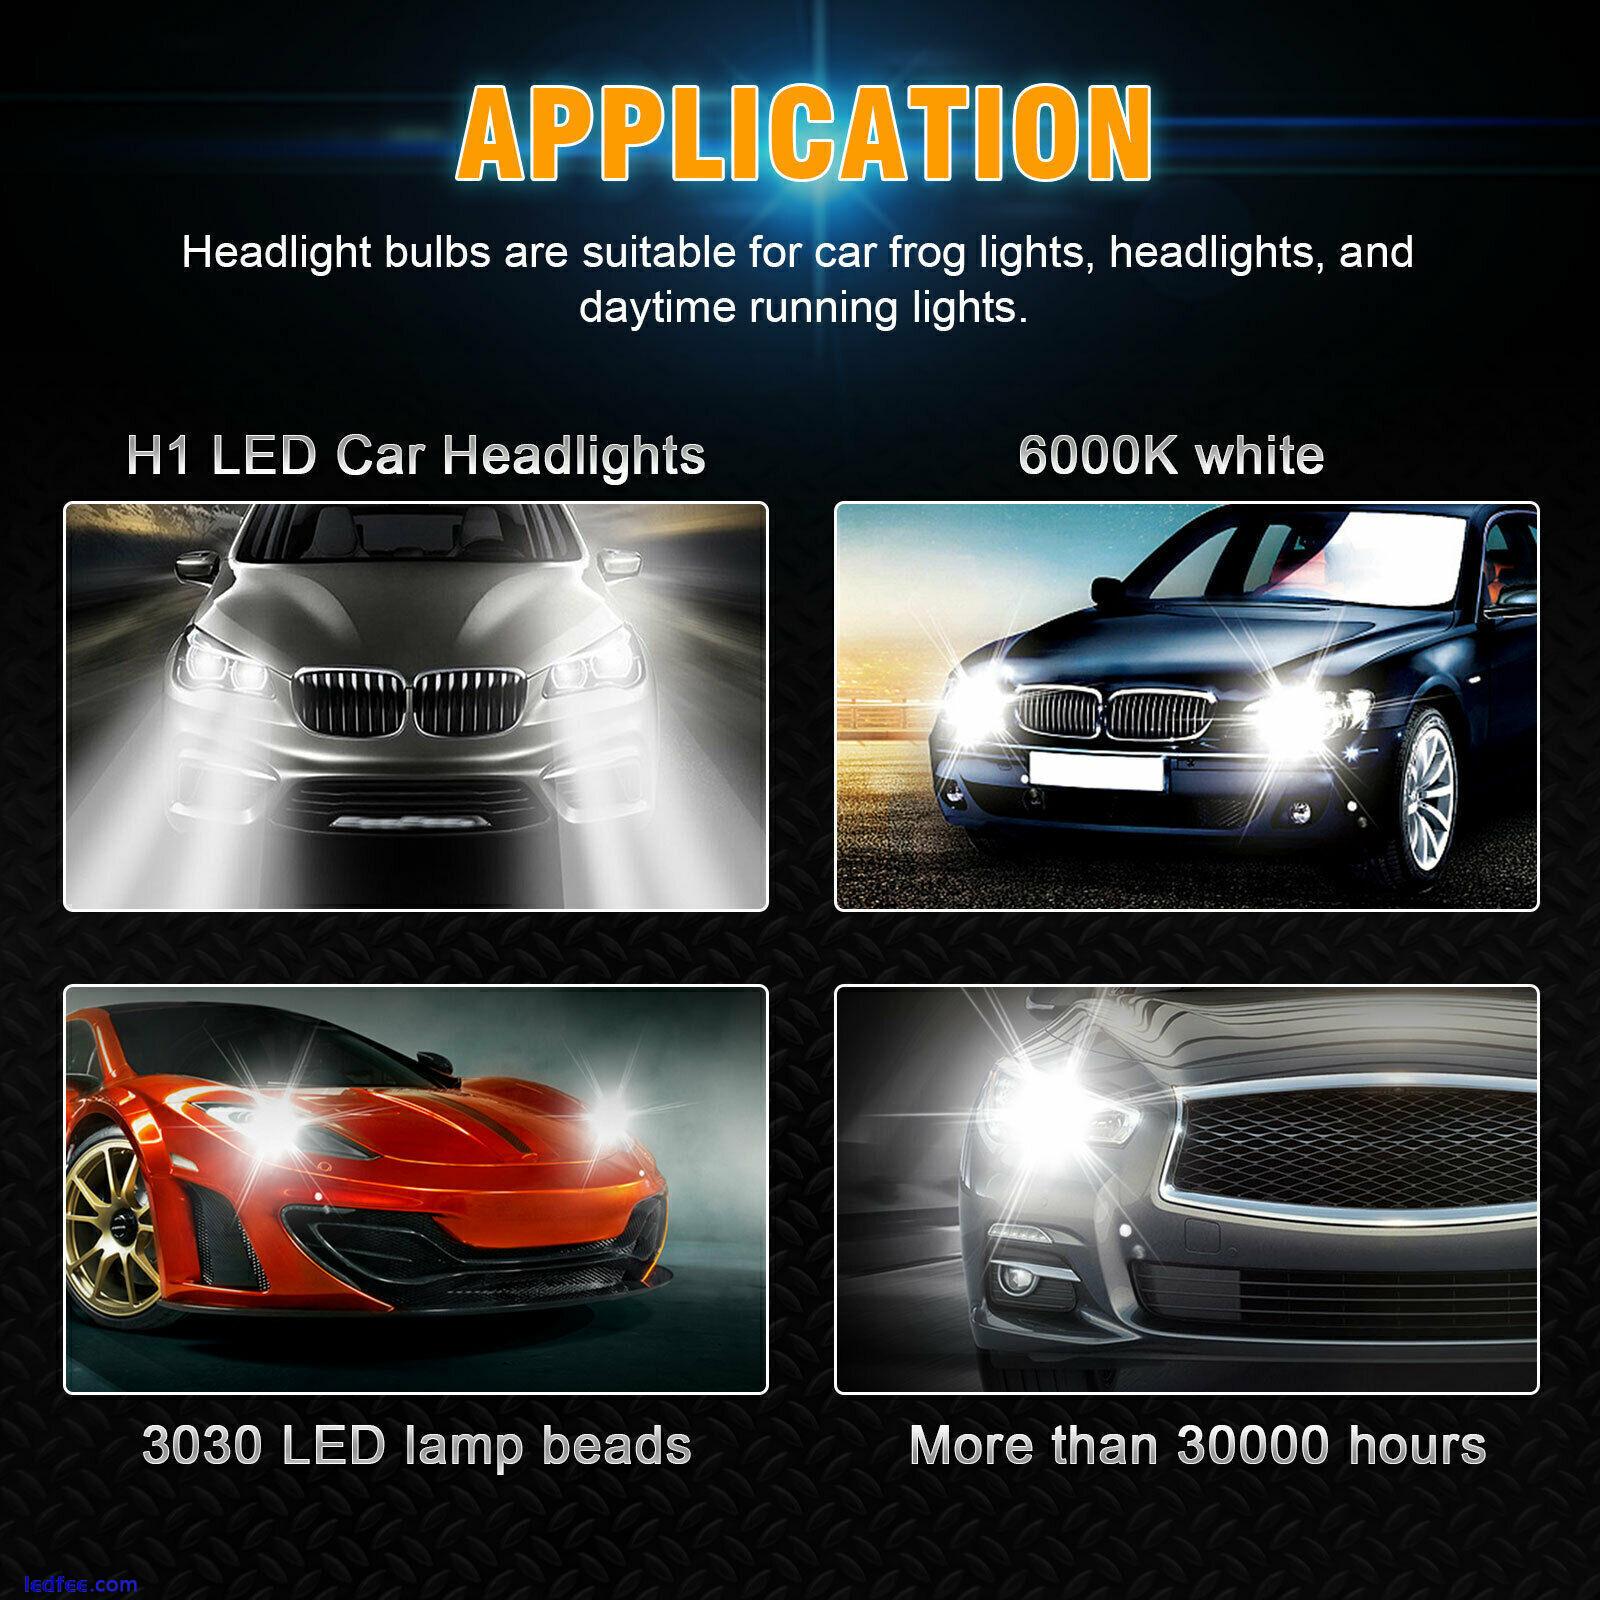 2x H1 Super White 6000K LED Headlight Fog Driving Bulbs Kit High Low Beam Lamps 5 